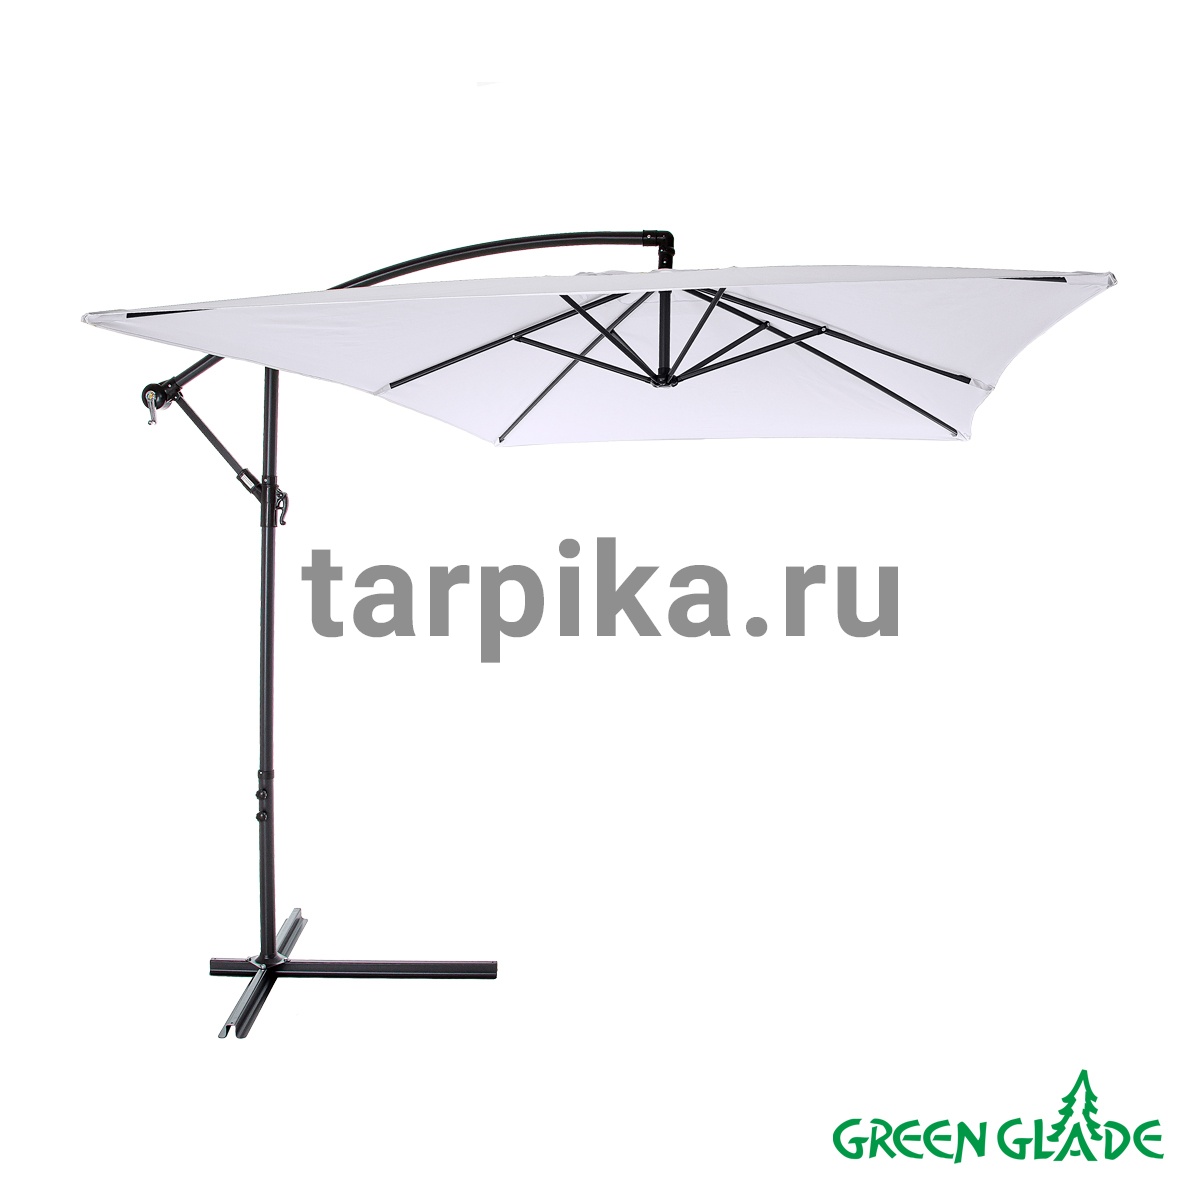 Зонт садовый Green Glade 6402 серый